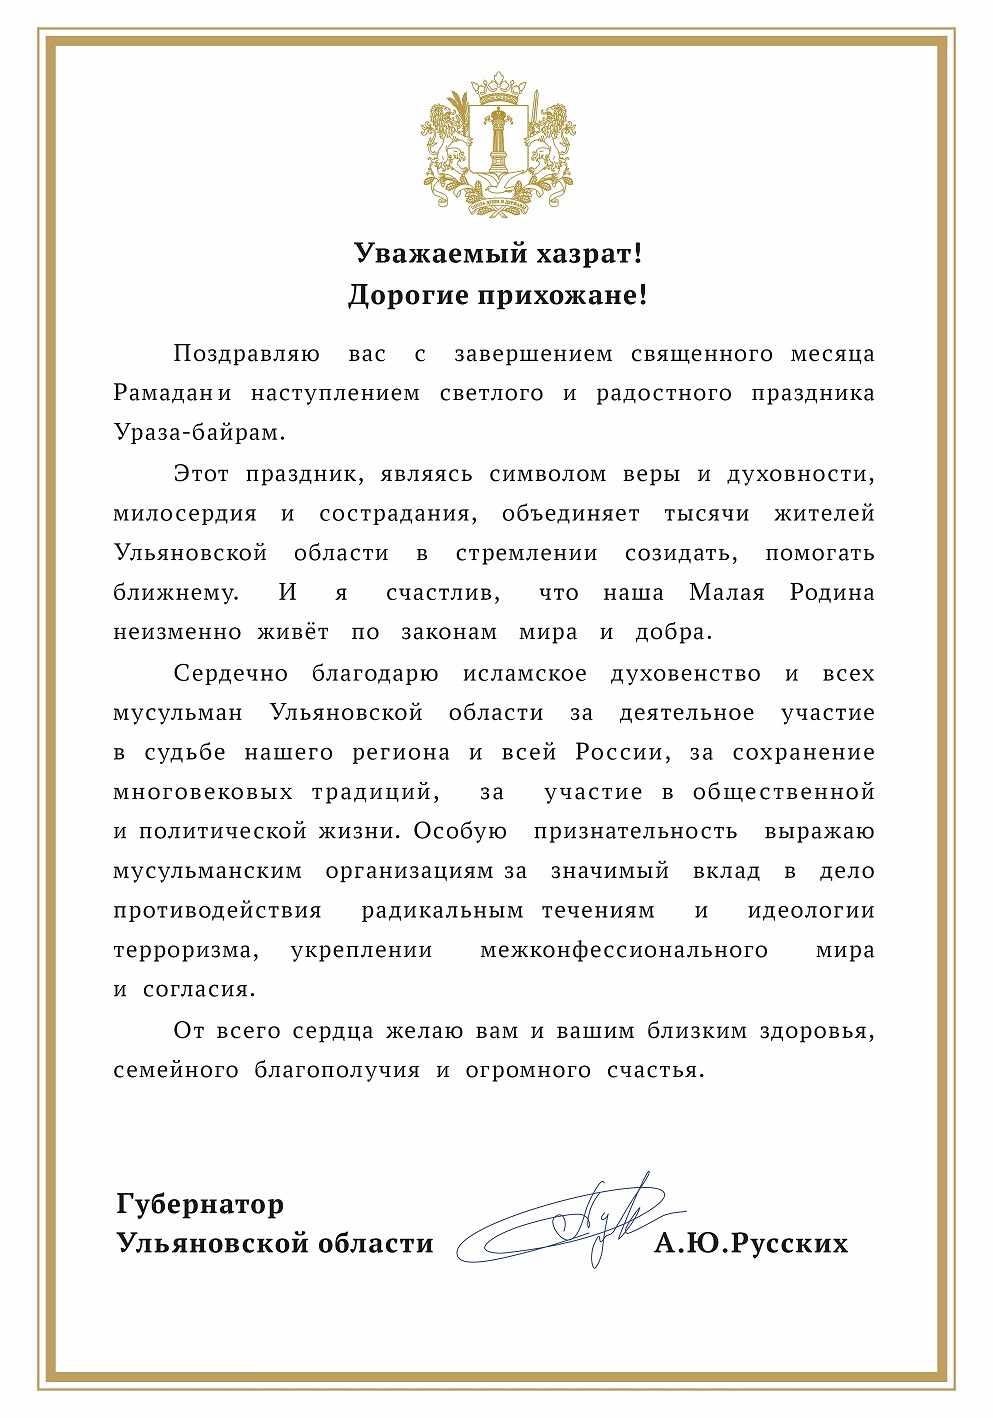 Губернатор Ульяновской области поздравляет с праздником Ураза-байрам.